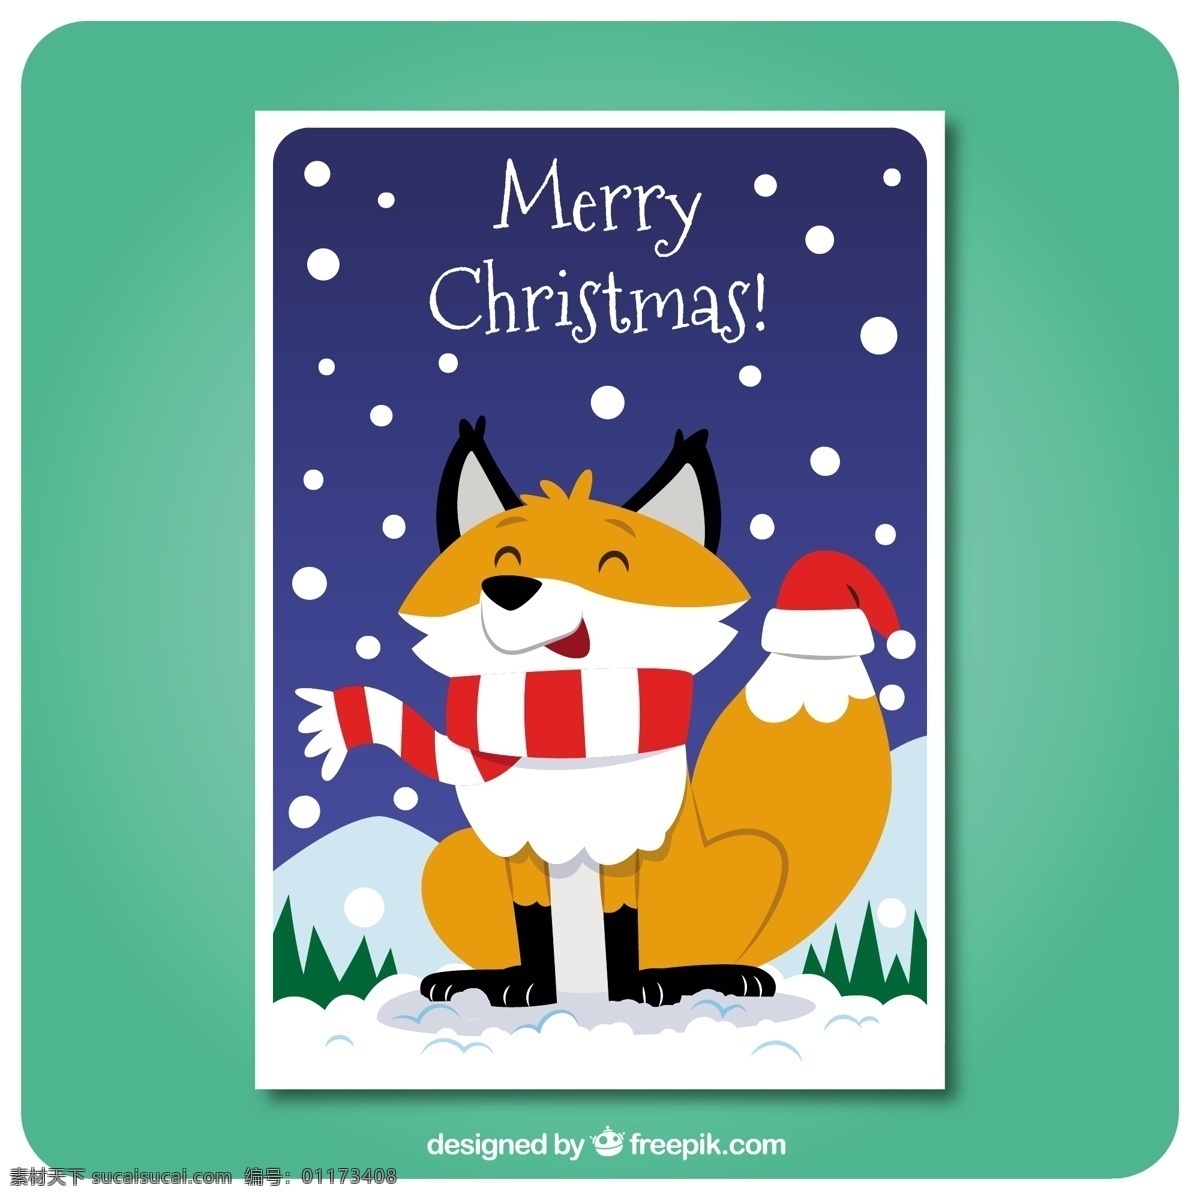 圣诞 卡通 动物 卡片 圣诞节 圣诞快乐 冬天 快乐 可爱 庆祝 假日 福克斯 可爱的 问候语 季节